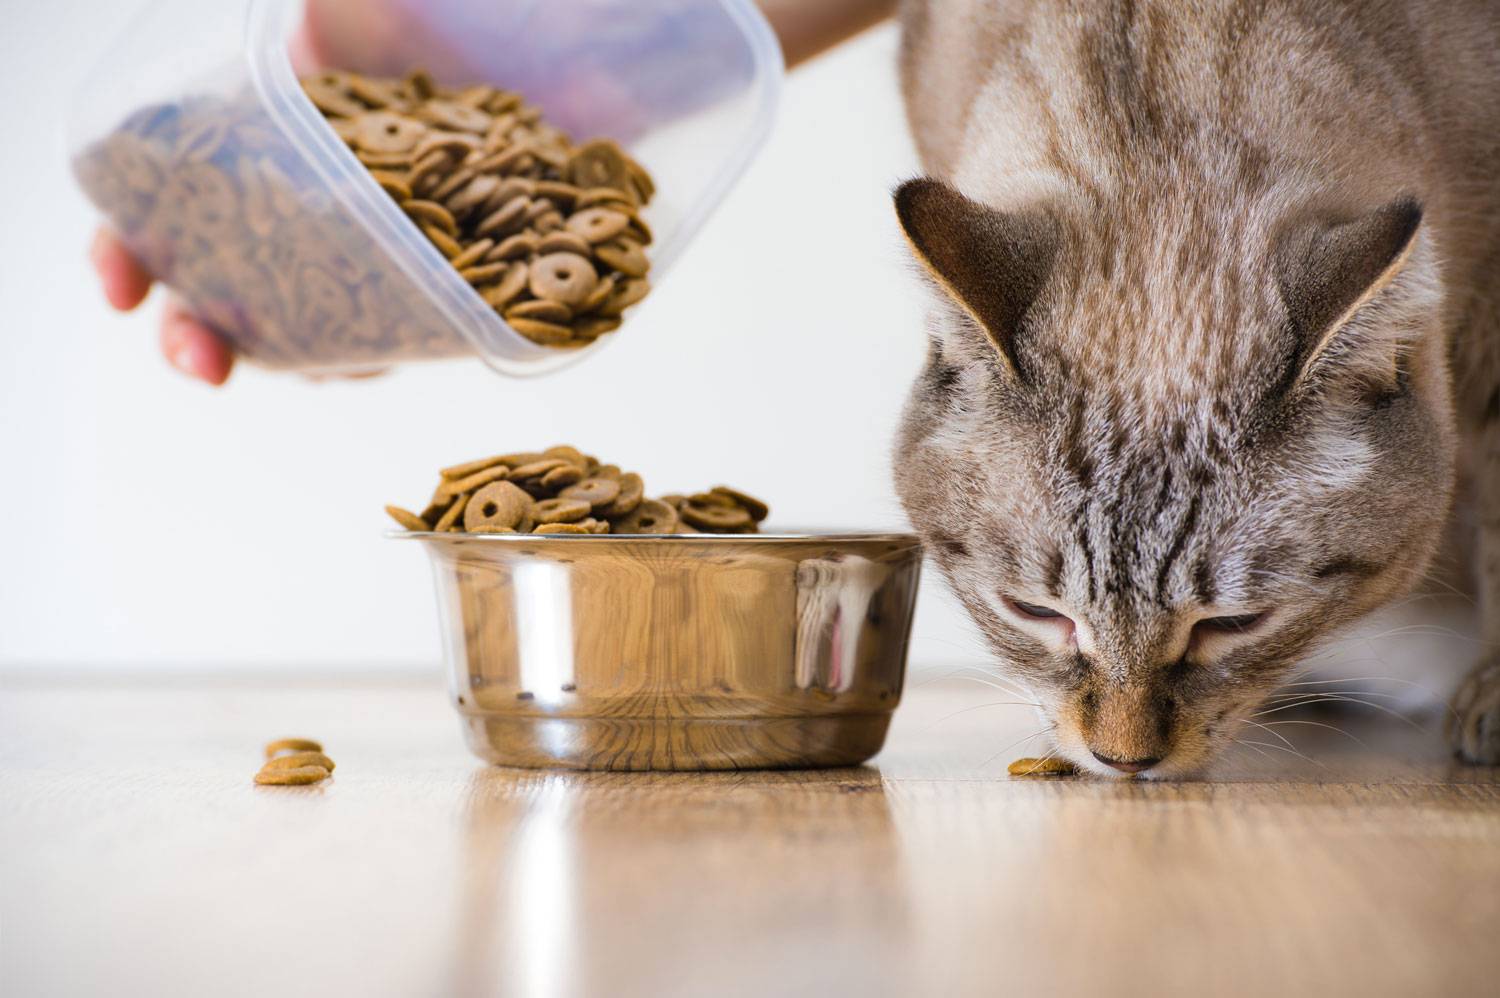 Понос и рвота у кота: что делать в домашних условиях